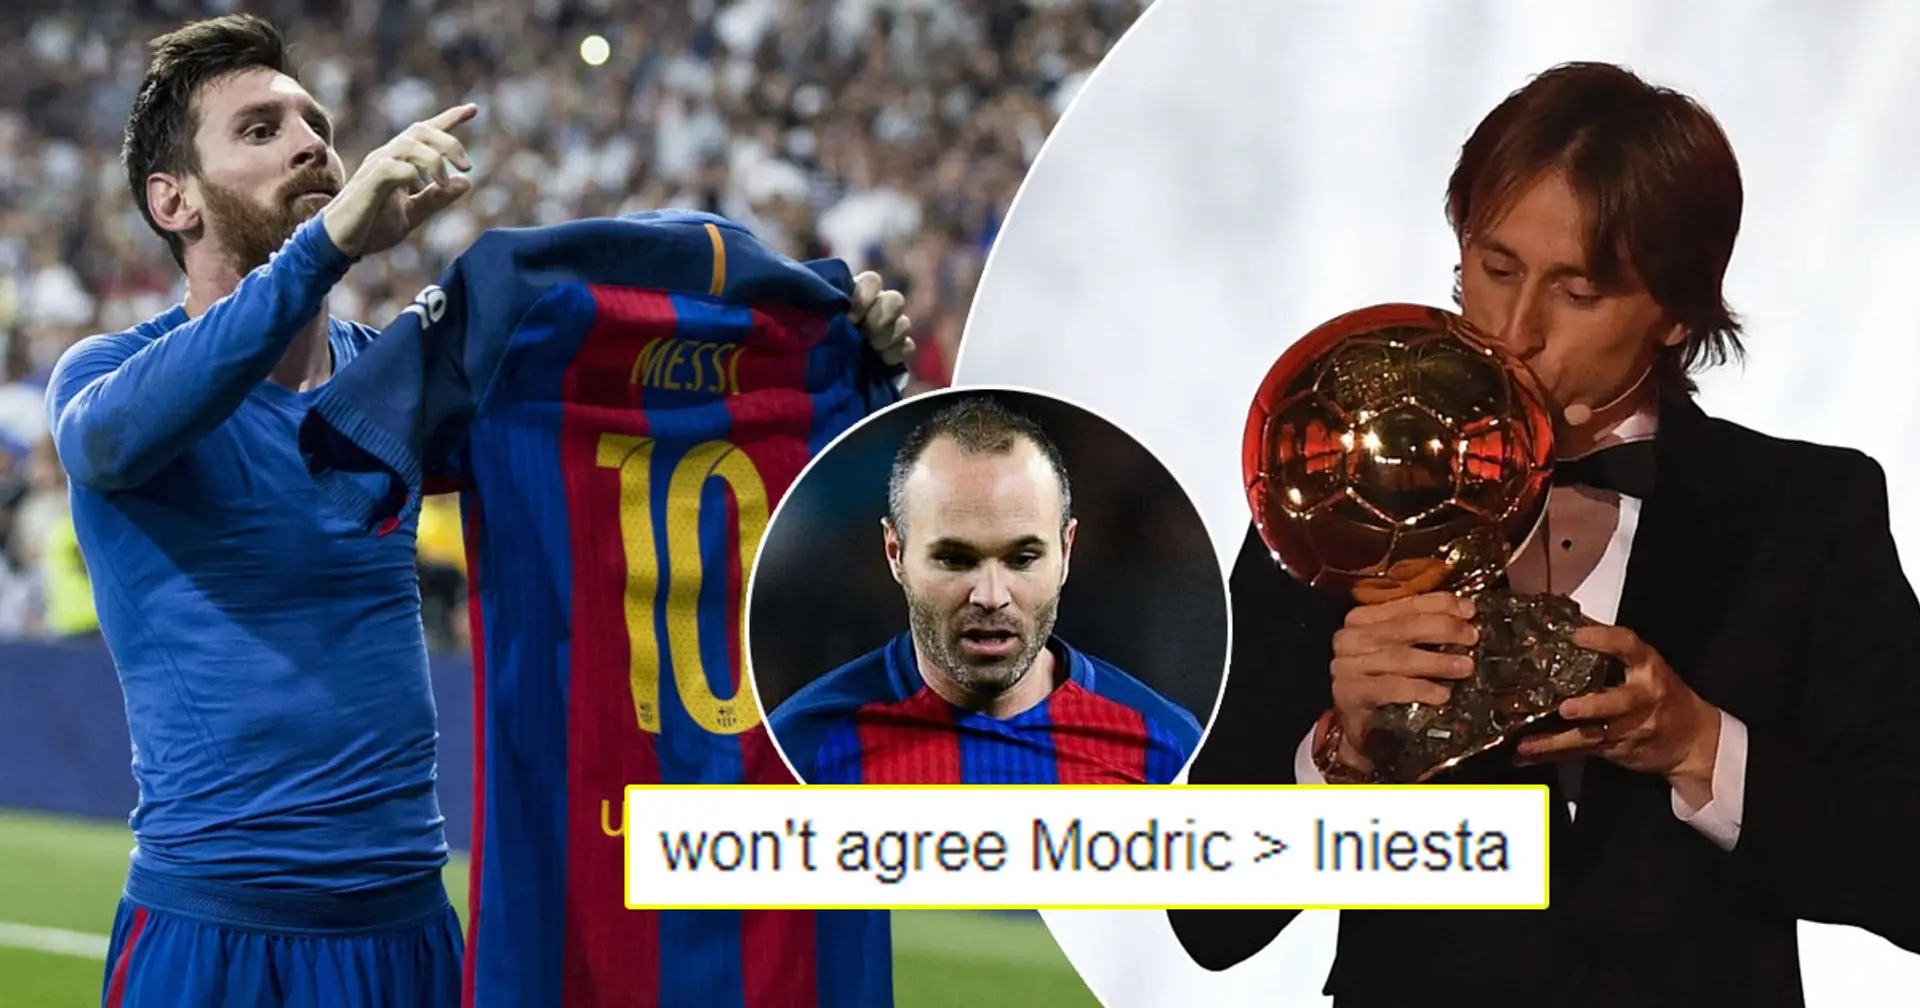 "Je suis un fan de Madrid mais j'applaudis le génie de Messi": 6 commentaires vraiment controversées des fans madrilènes